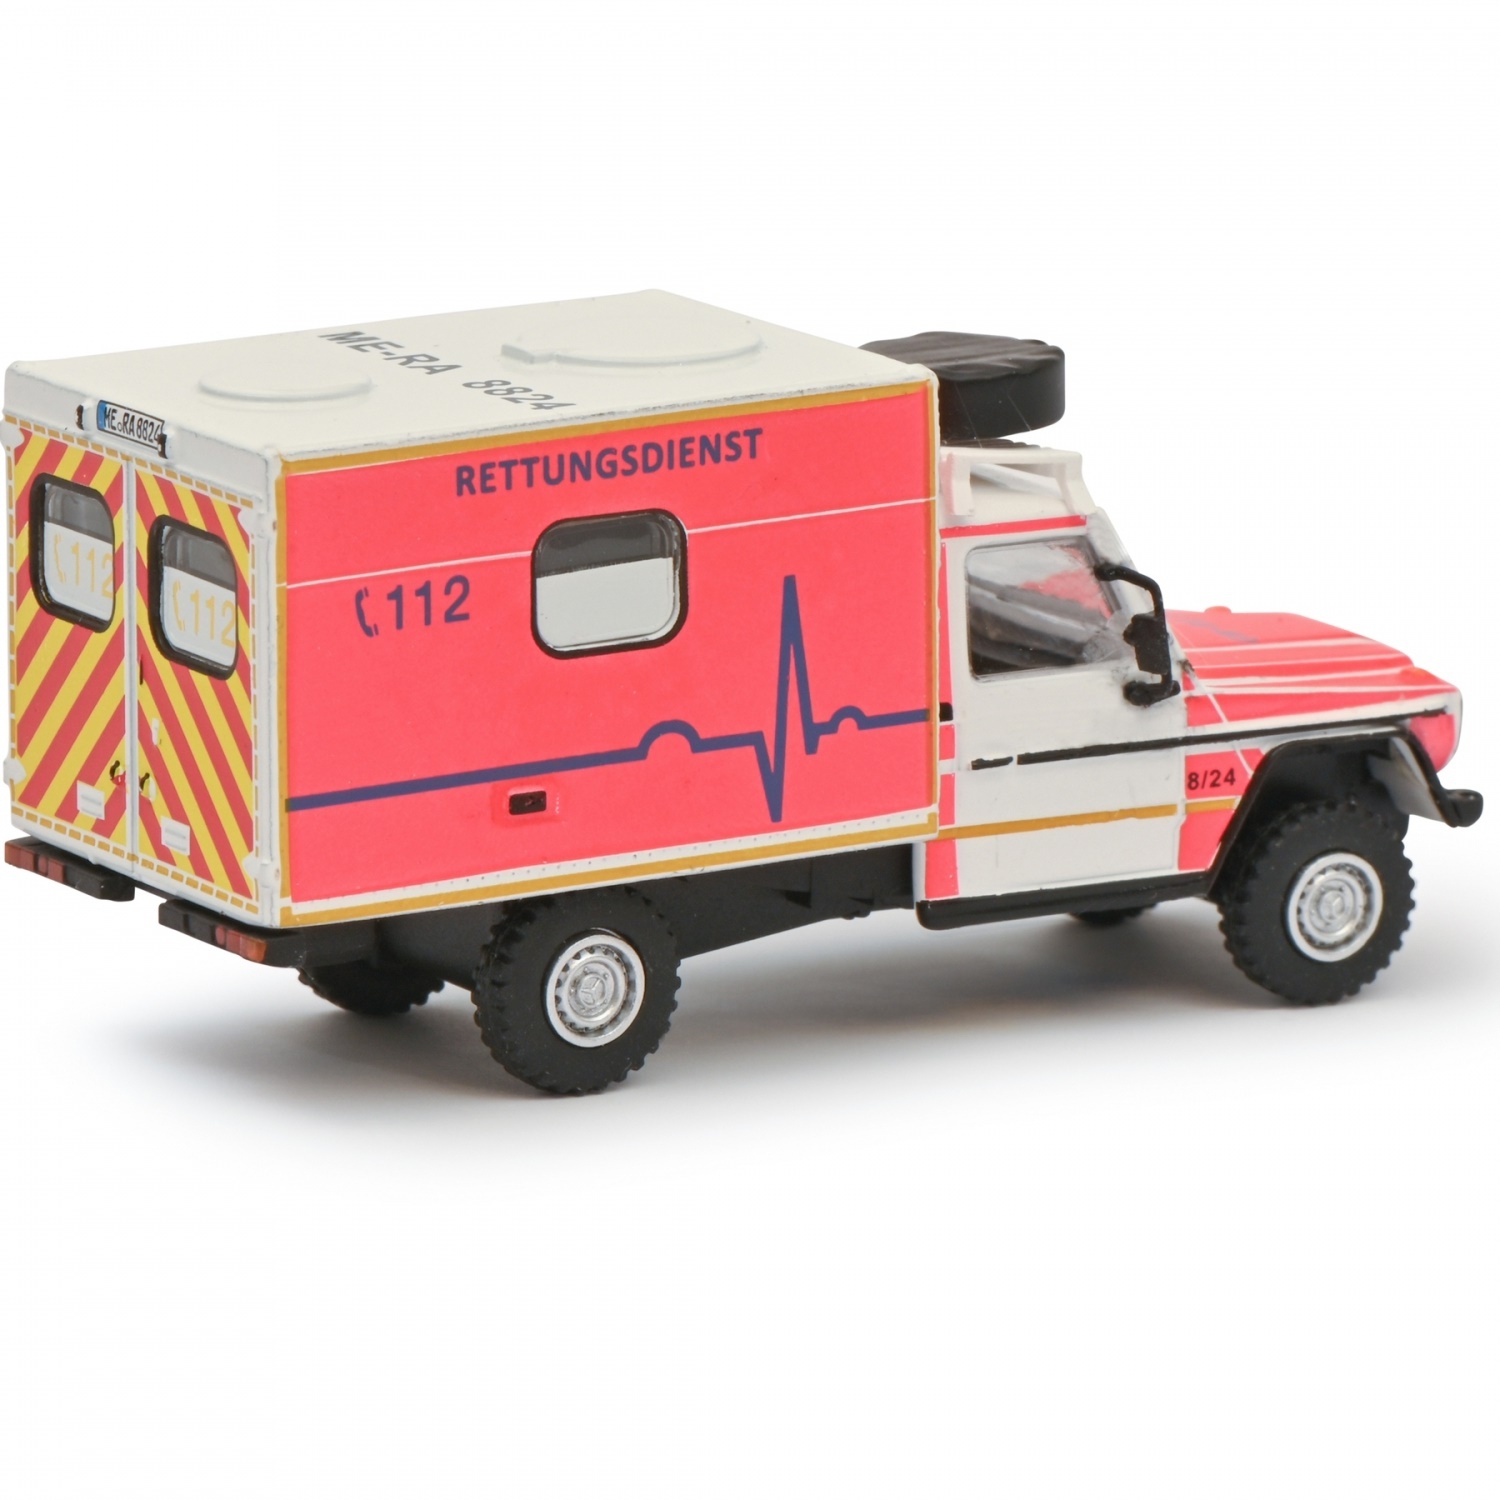 452674300 - Schuco - Mercedes-Benz G-Modell ambulance Rettungsdienst  Ratingen